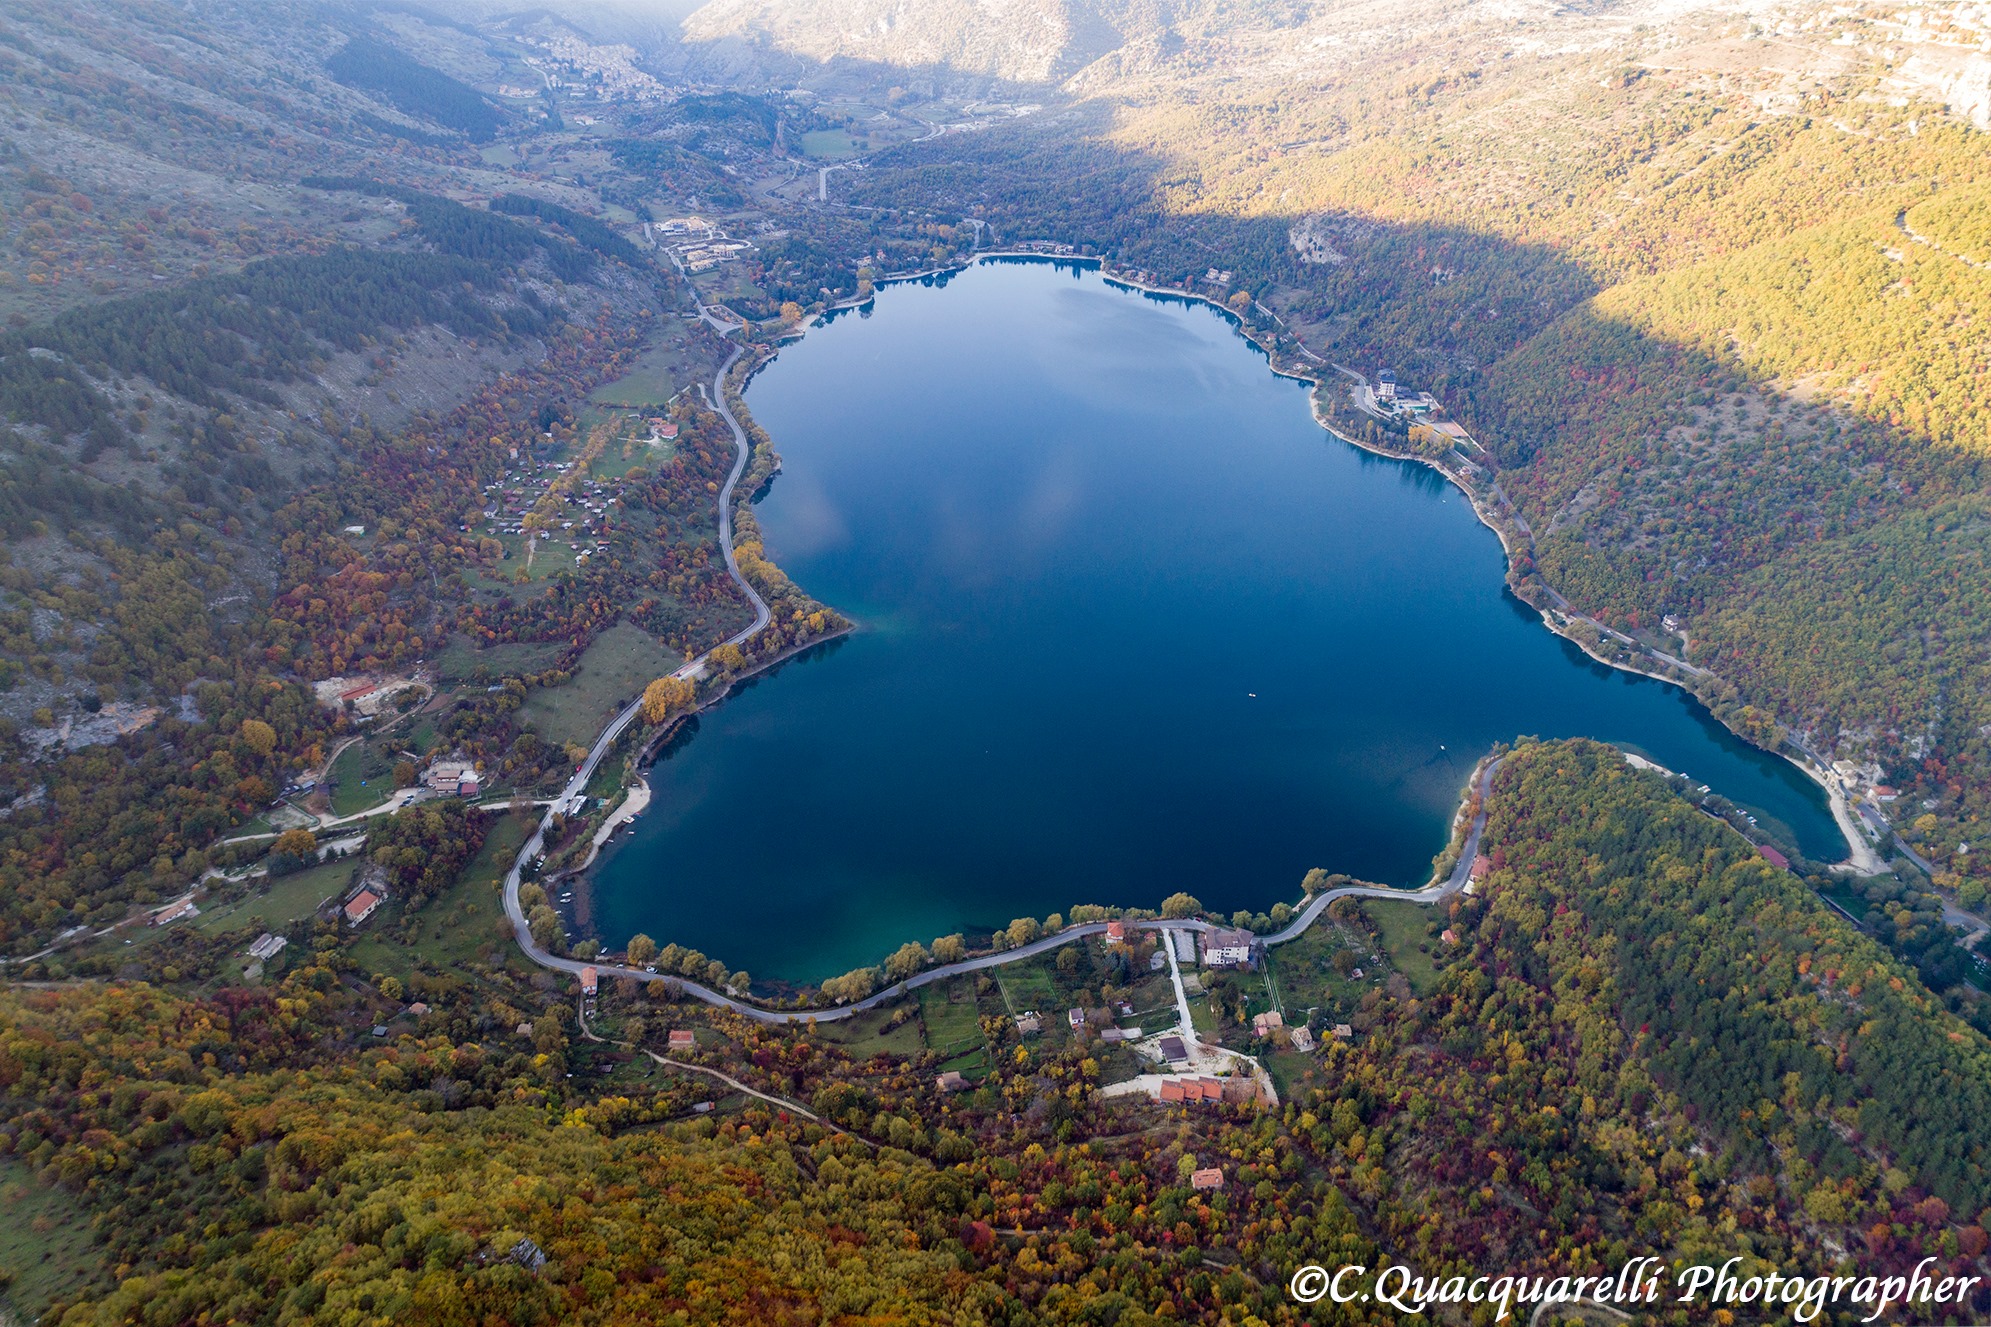 Il Lago di Scanno, è davvero uno dei cuori più belli d'Abruzzo. Ci siete già stati_